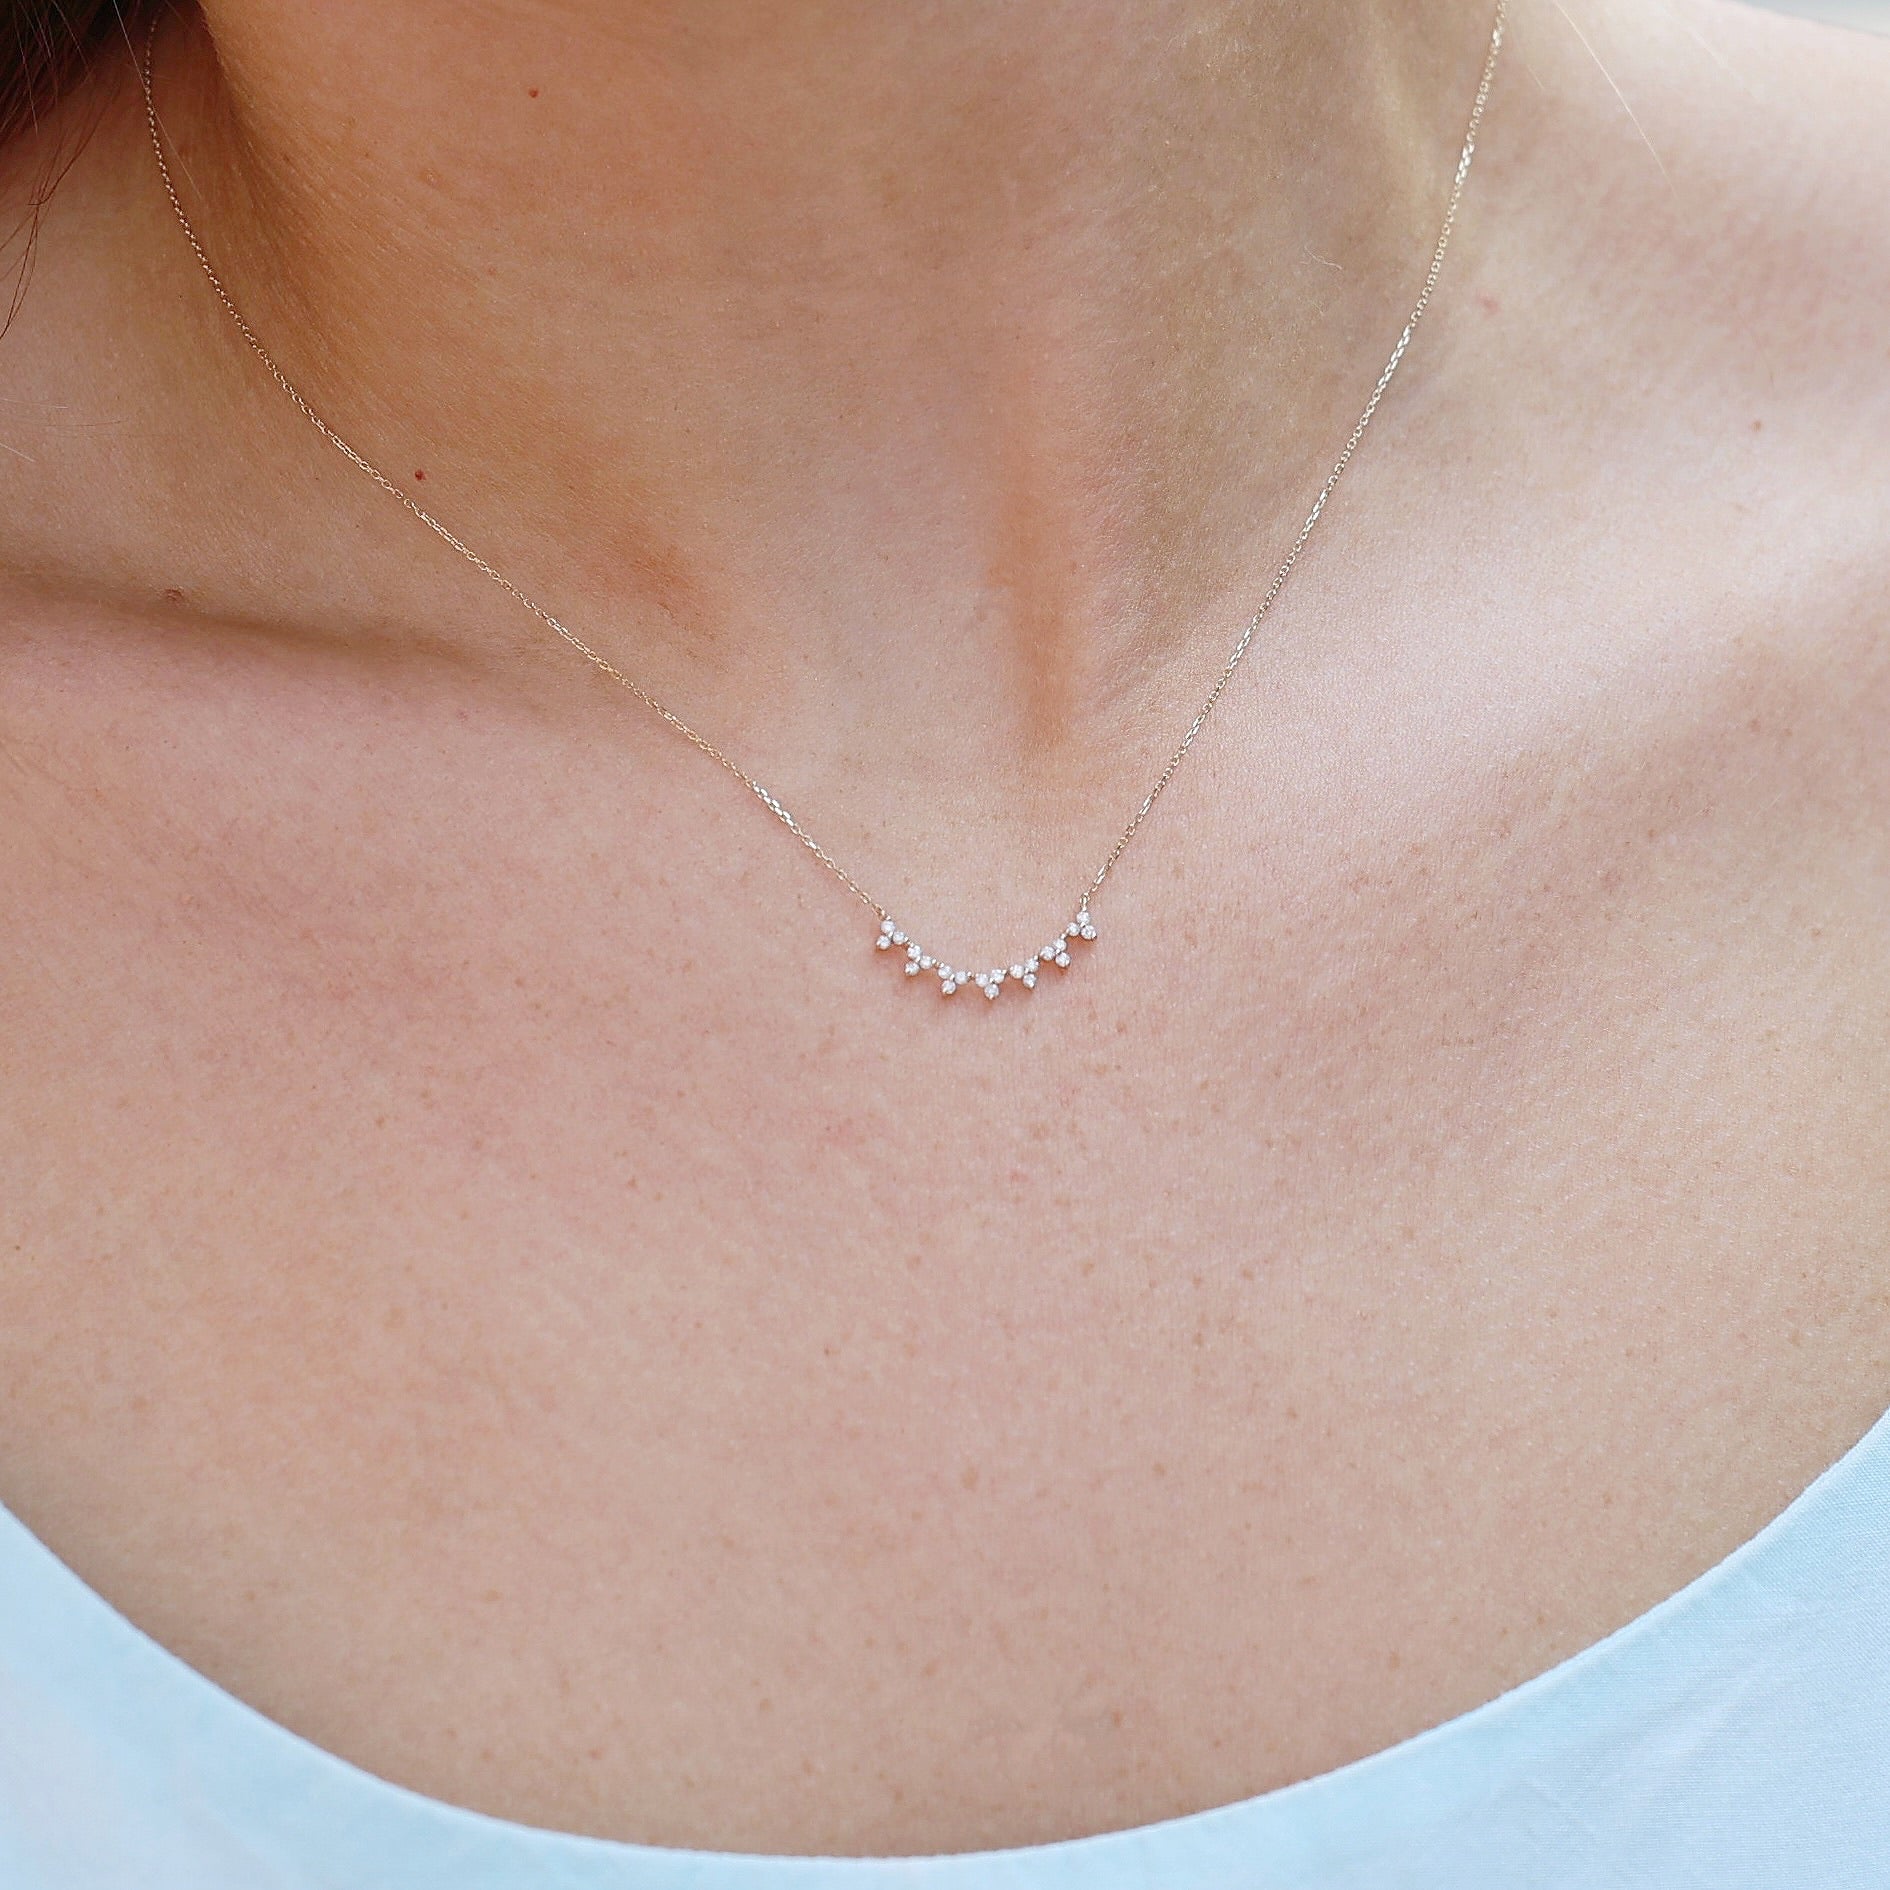 Olive Branch Diamond Necklace